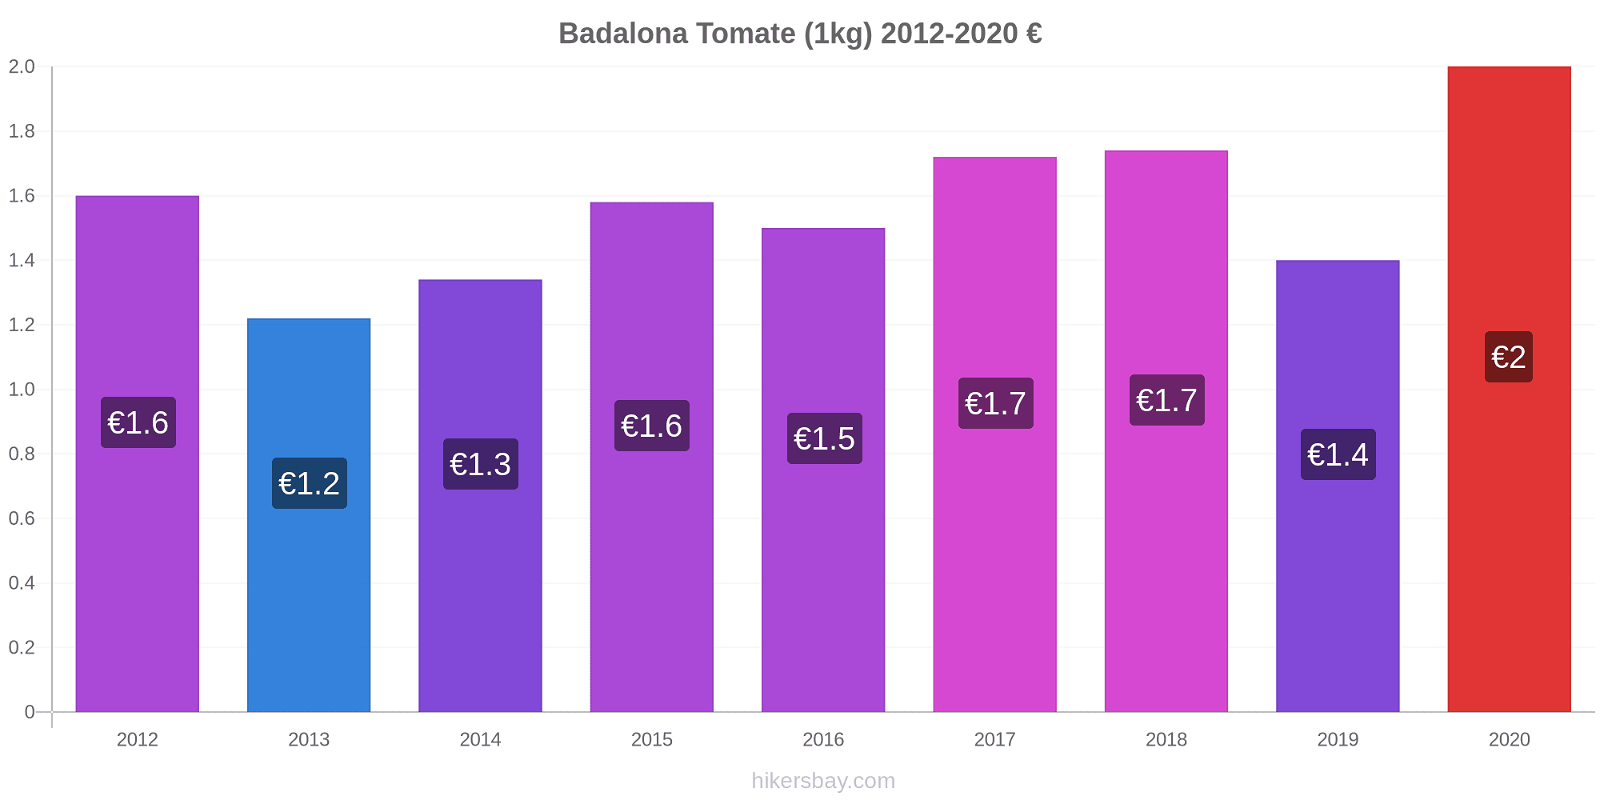 Badalona changements de prix Tomate (1kg) hikersbay.com